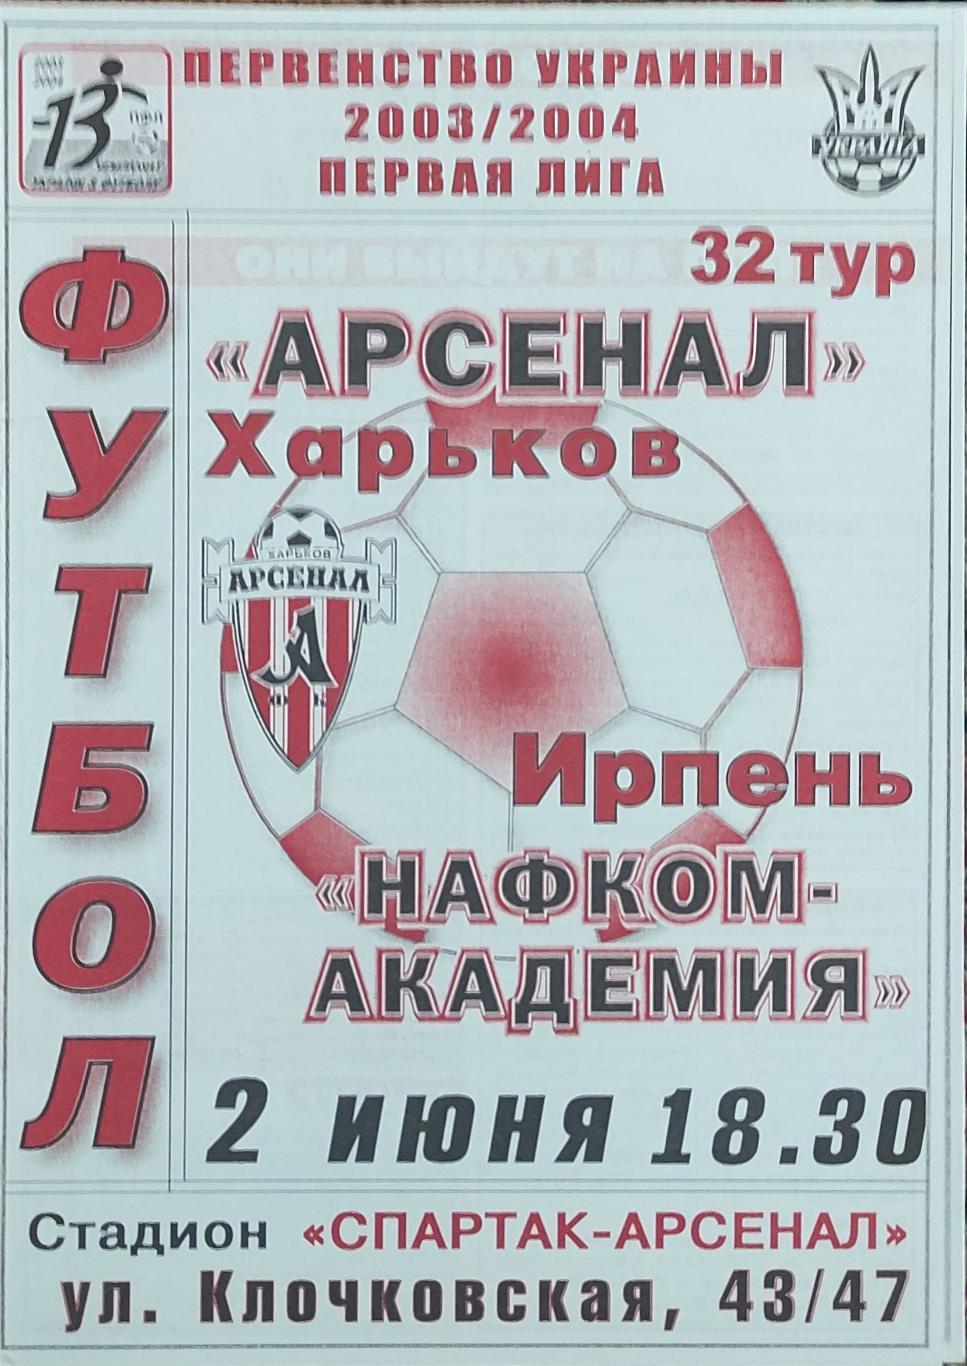 Арсенал Харьков -Нафком-Академия Ирпень .2.06.2003